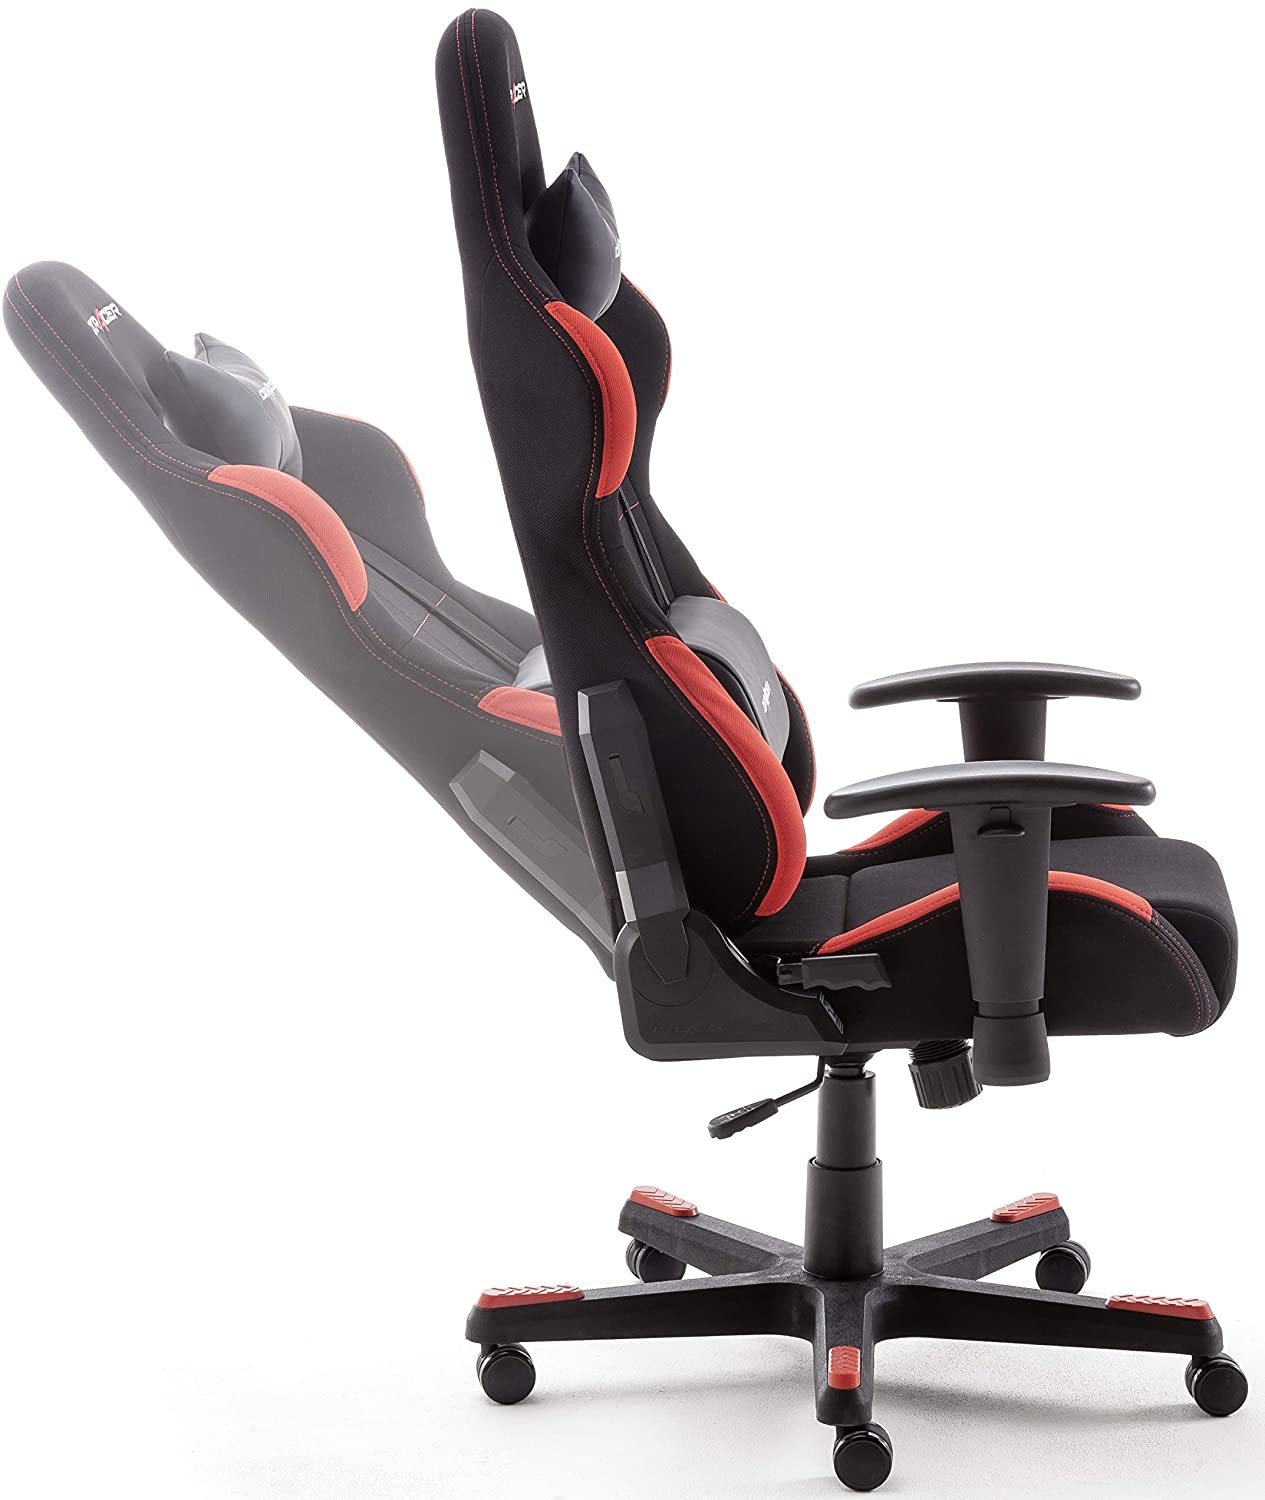 Bild von FD01-NR Gaming Chair (Kunstleder) schwarz/rot